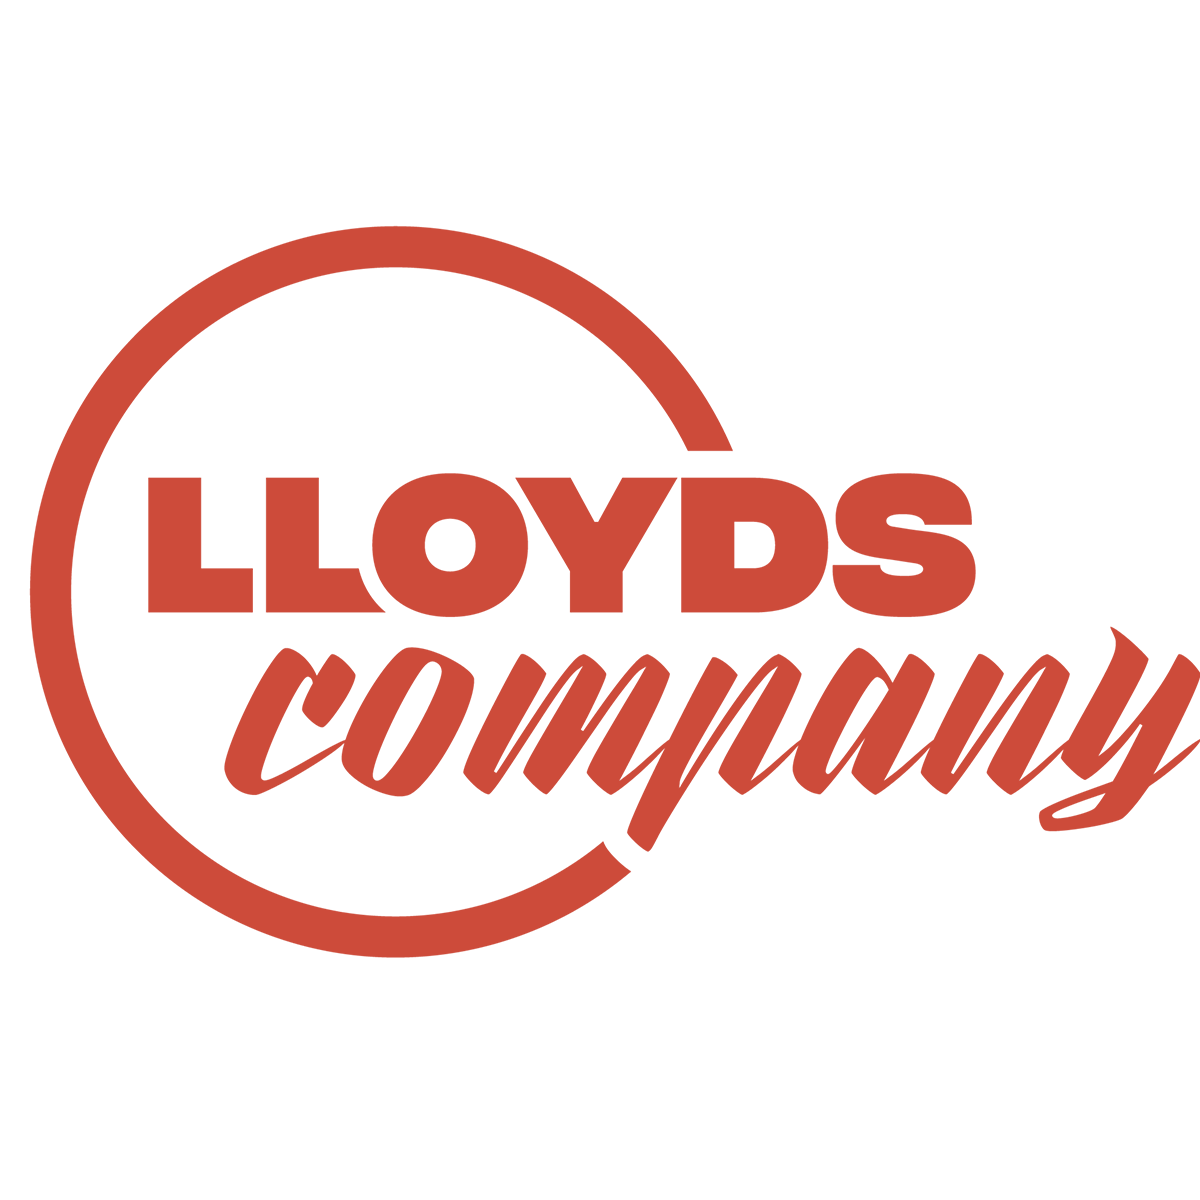 Lloyds company